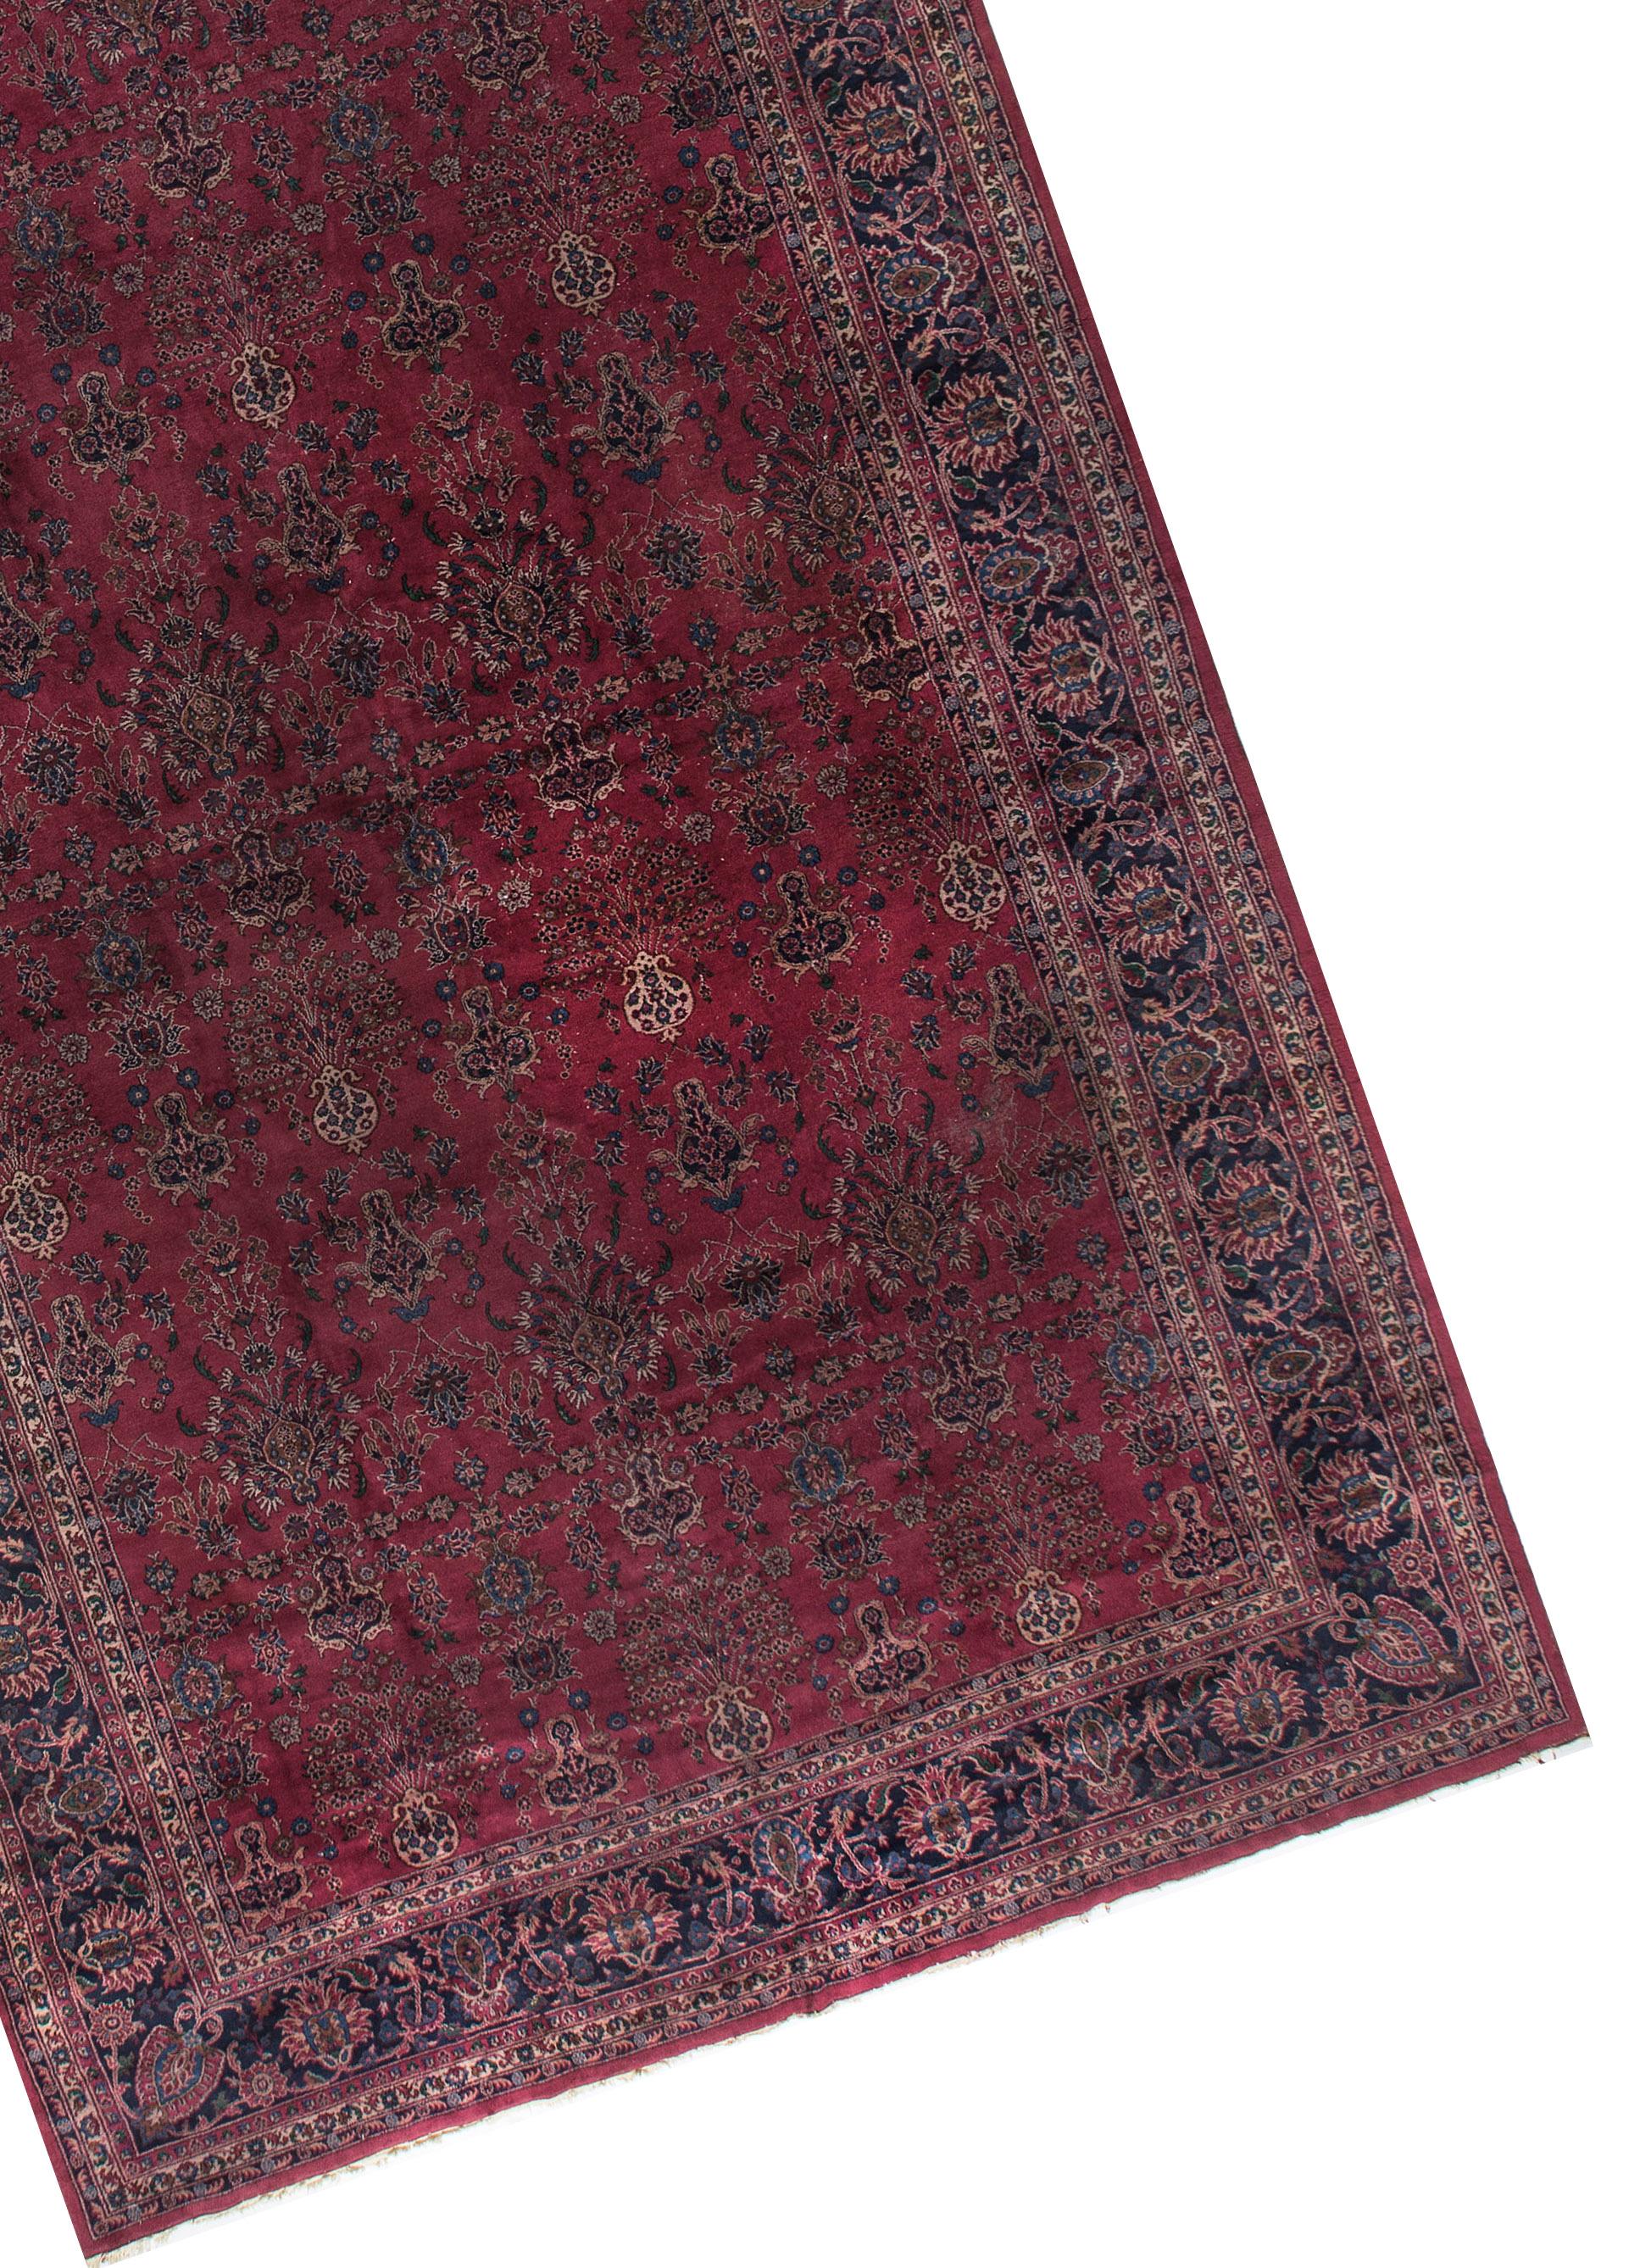 Antiker persischer Kaschan-Teppich, um 1900. Wunderschöne Blumenmuster füllen das Hauptfeld, und alles ist mit einer wunderschönen marineblauen Bordüre eingefasst, die das Blumenthema wiederholt. Diese Bordüre selbst ist von zwei elfenbeinfarbenen